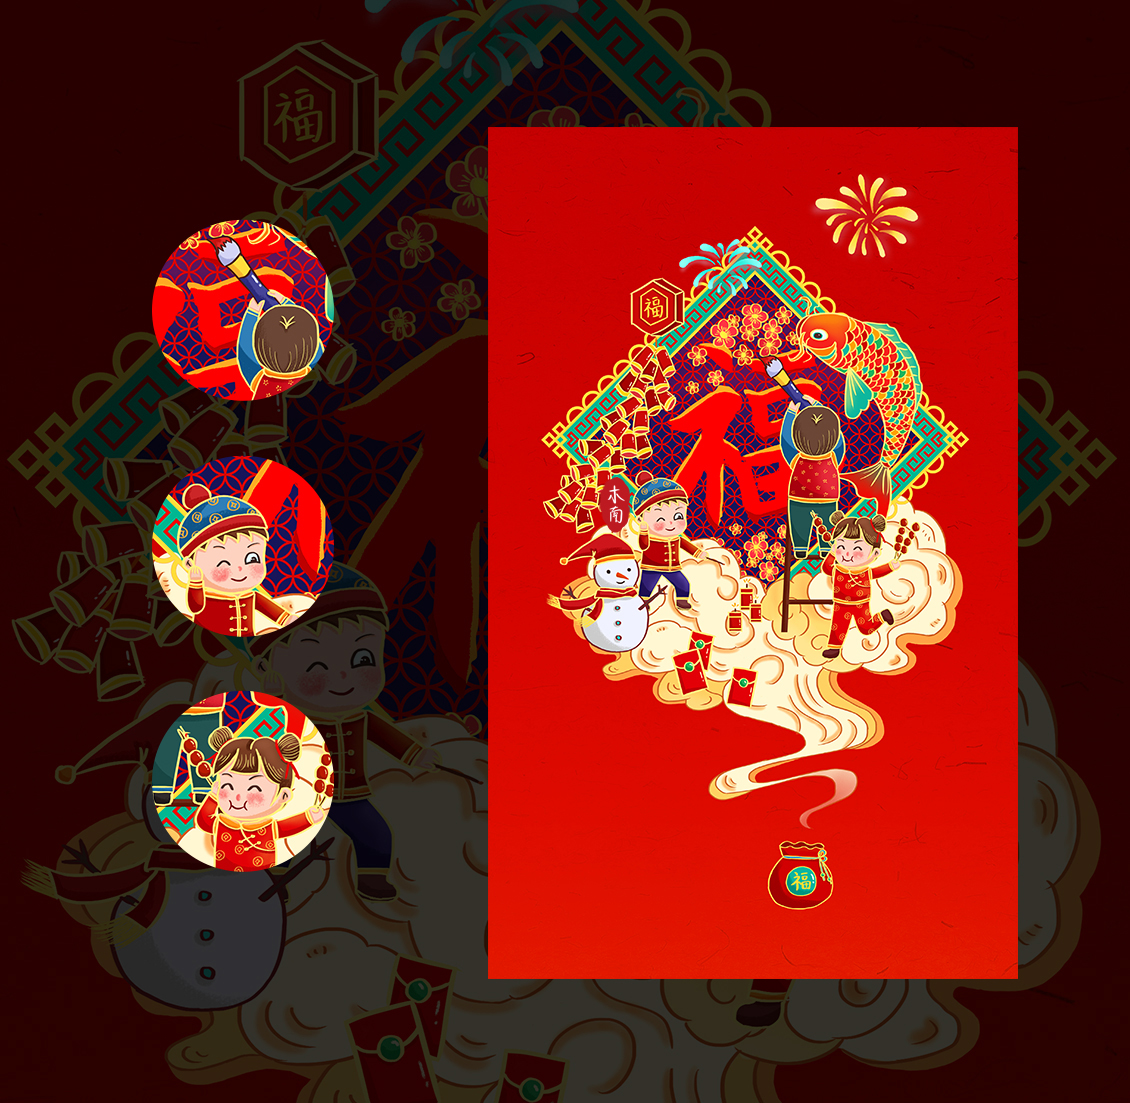 新年主题系列插画礼盒主视觉丨中国传统节日-春节插画